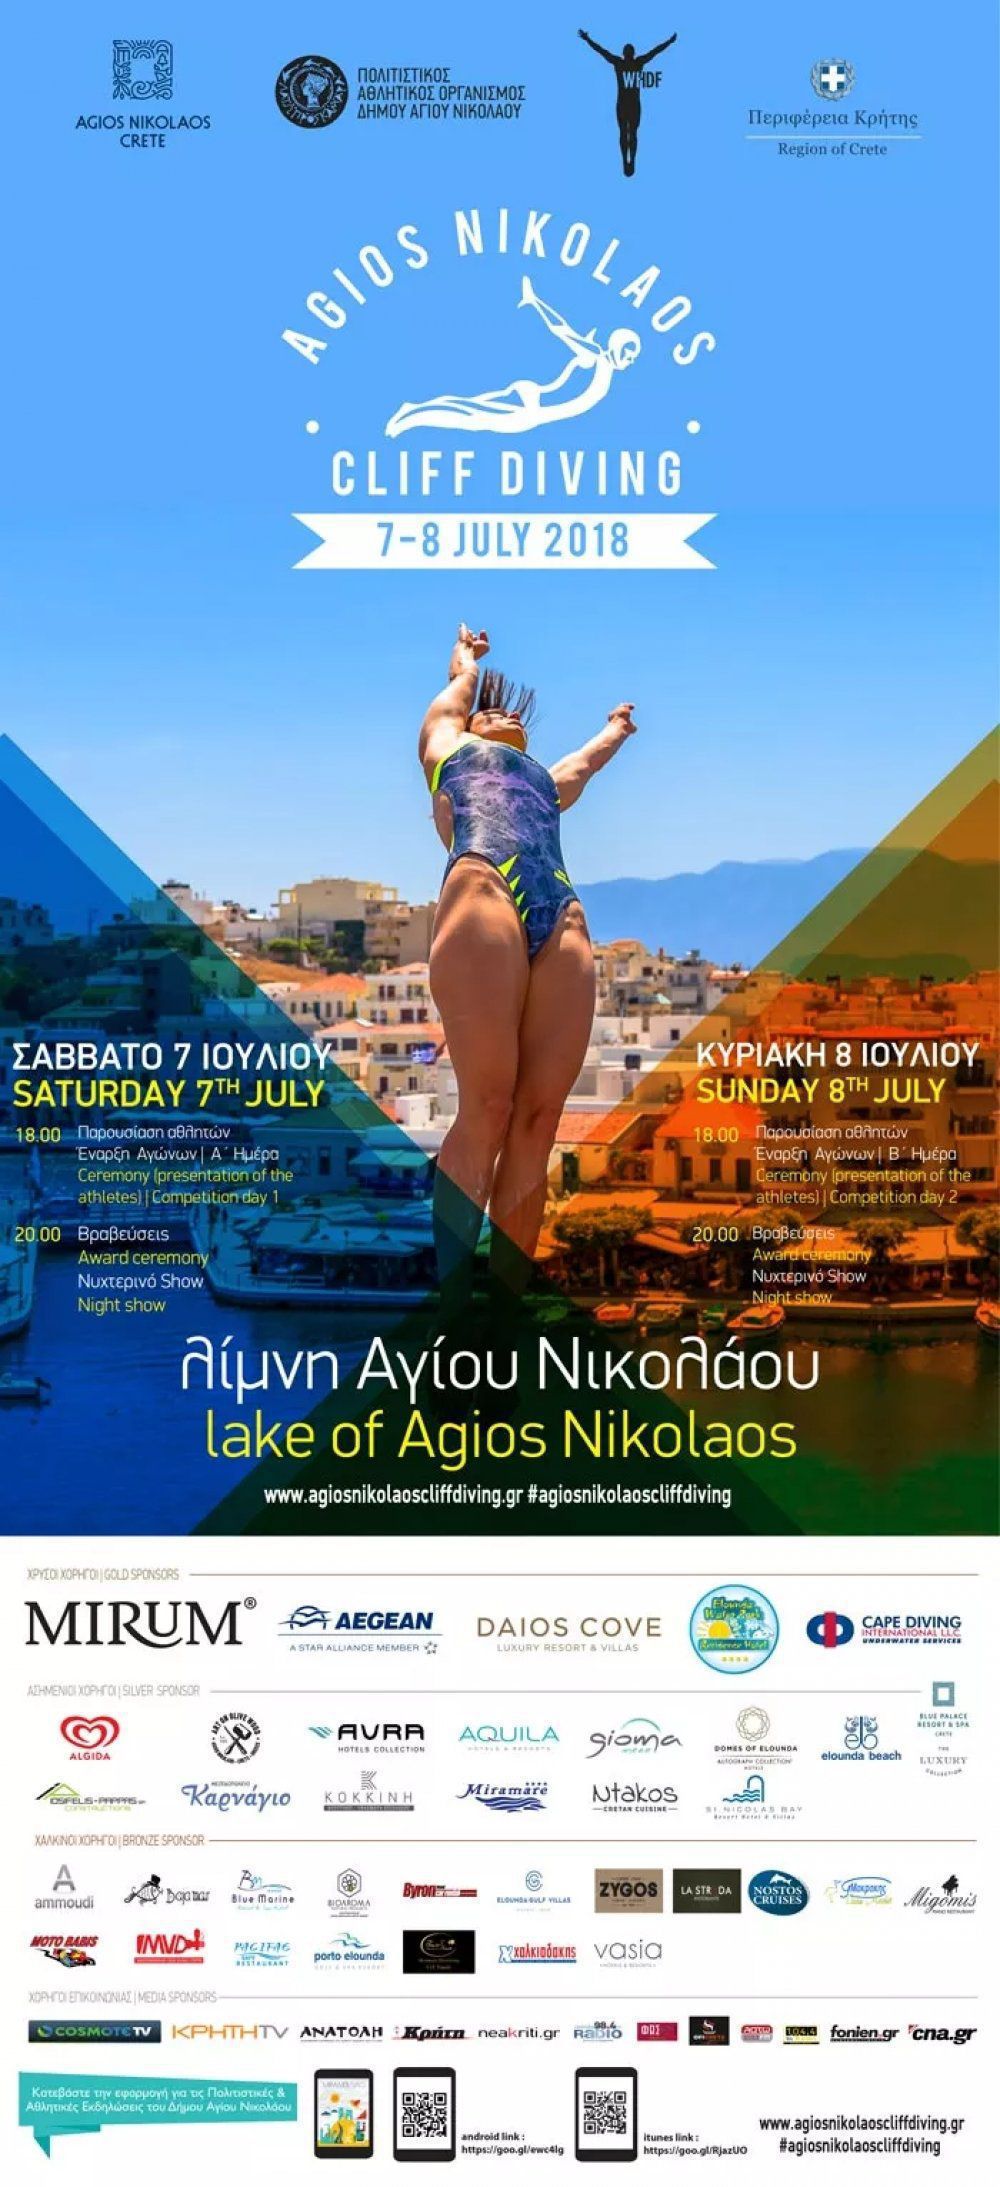 Αρχίζει το Agios Nikolaos Cliff Diving 2018